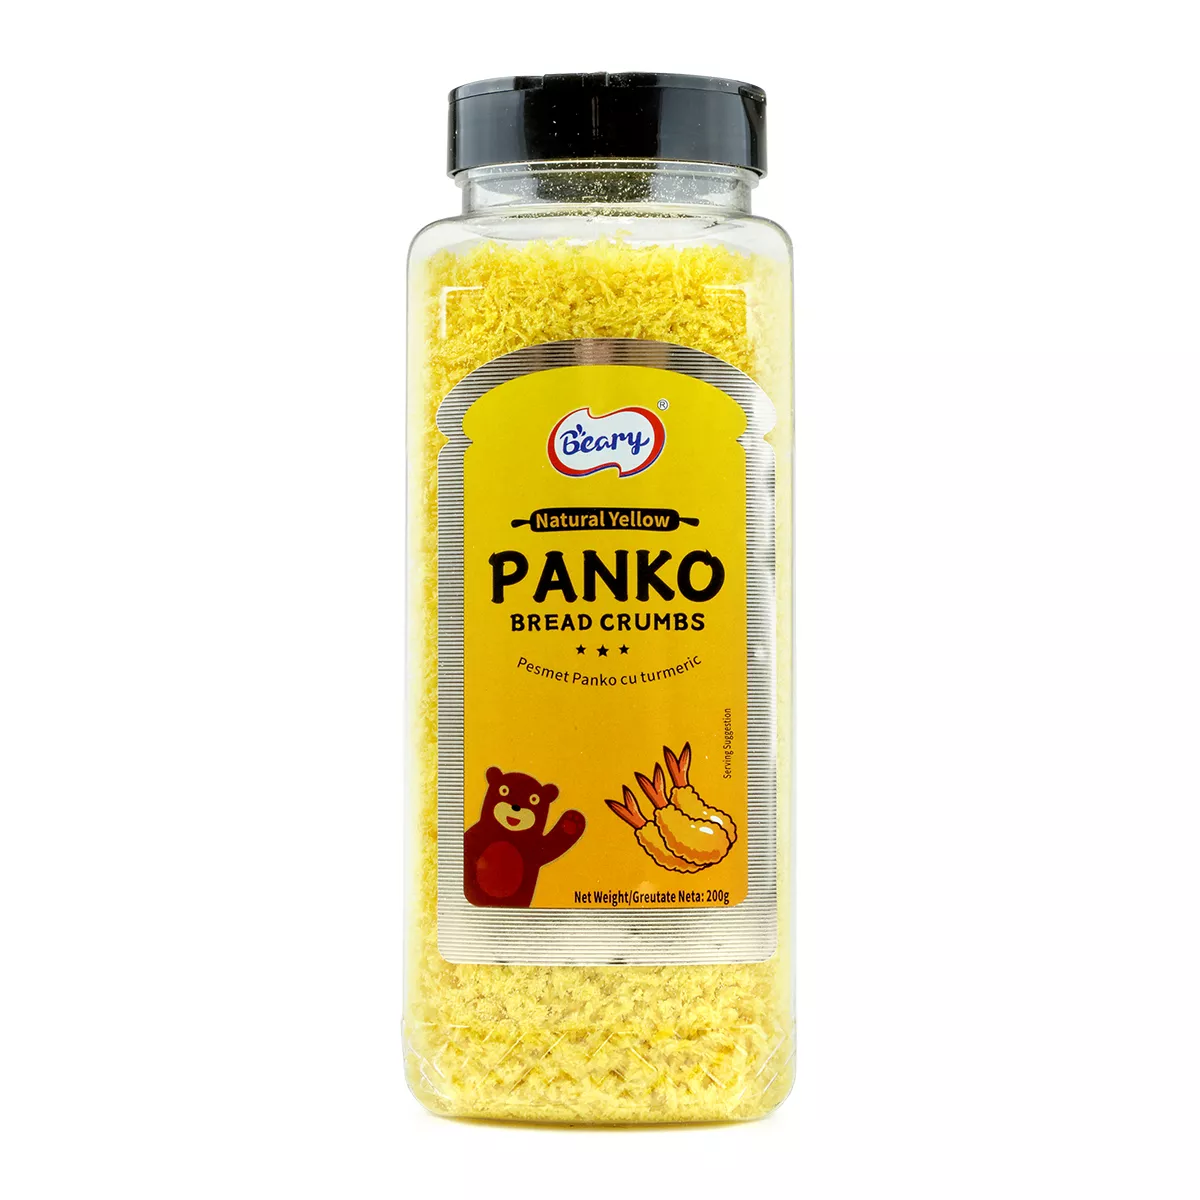 Pesmet Panko cu turmeric BEARY 200g, [],asianfood.ro